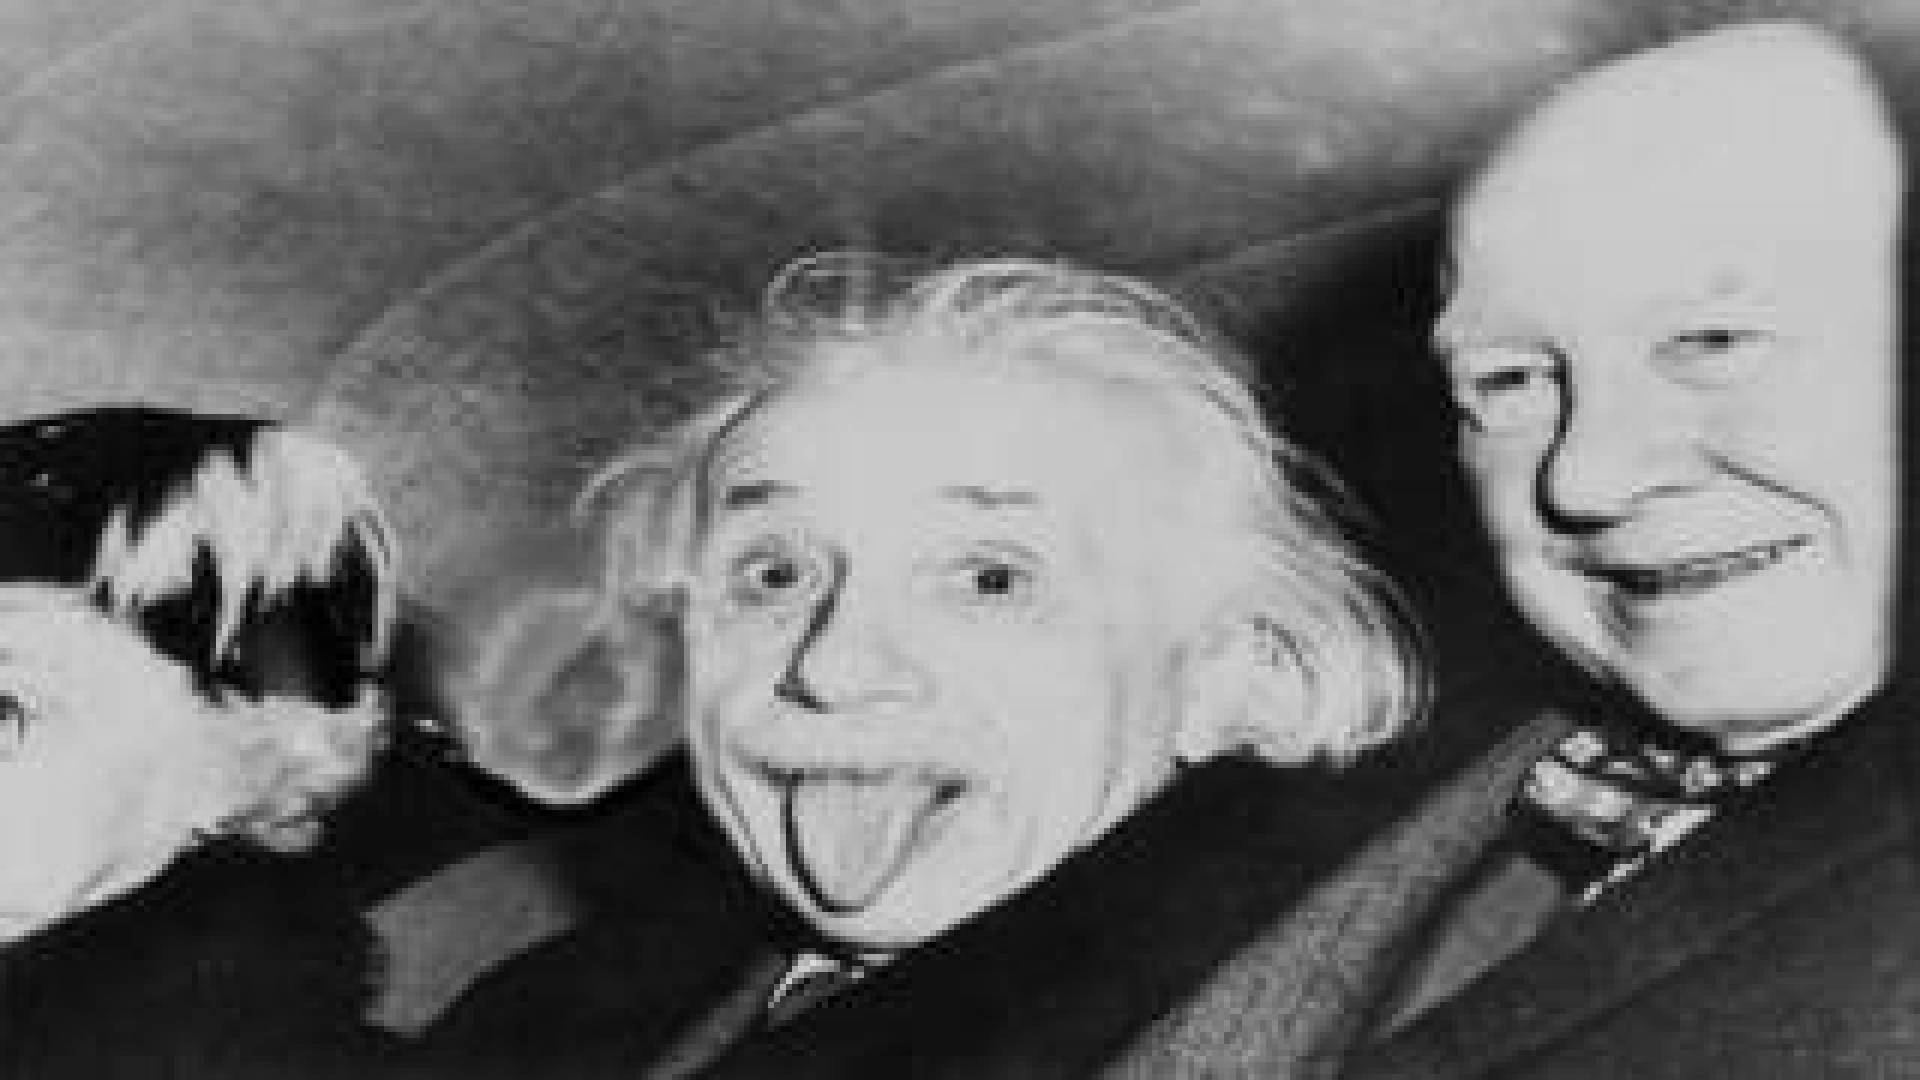 ماهي قصة الصورة الشهيرة لأينشتاين ؟